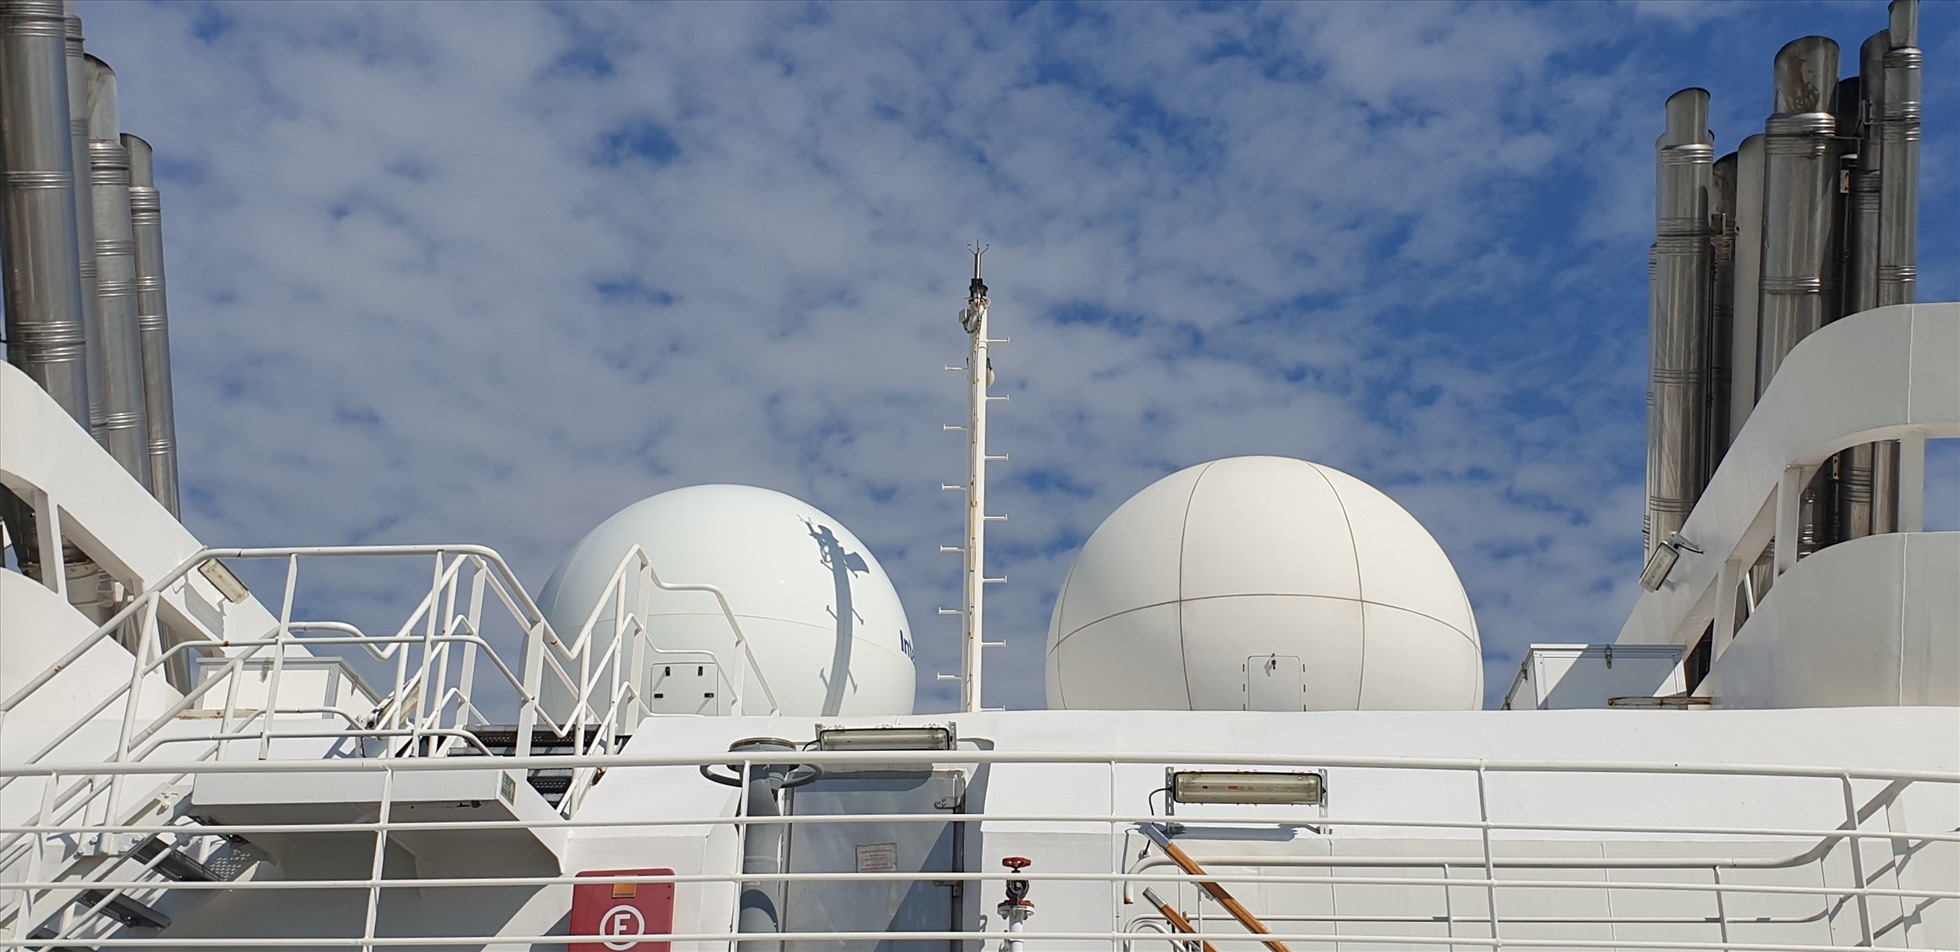 Hệ thống thu-phát qua vệ tinh trên nóc tàu. Ảnh: Nguyễn Hùng